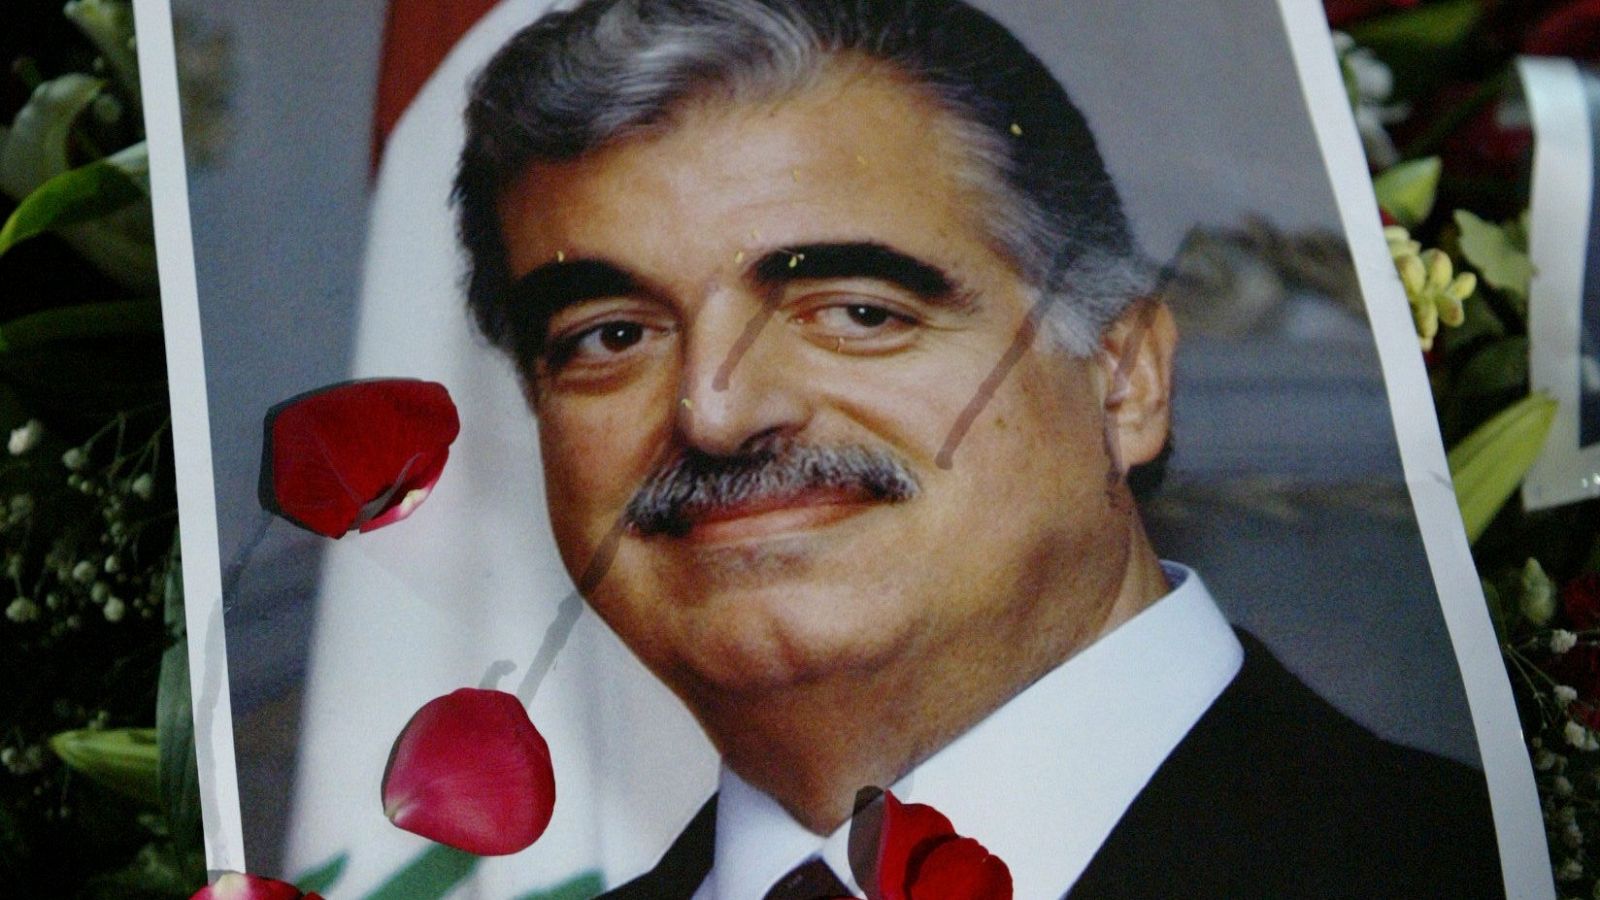 En esta foto de archivo tomada el 16 de febrero de 2005, la tumba del ex primer ministro libanés asesinado Rafiq Hariri (retrato) está cubierta de flores después de su funeral en el centro de Beirut.